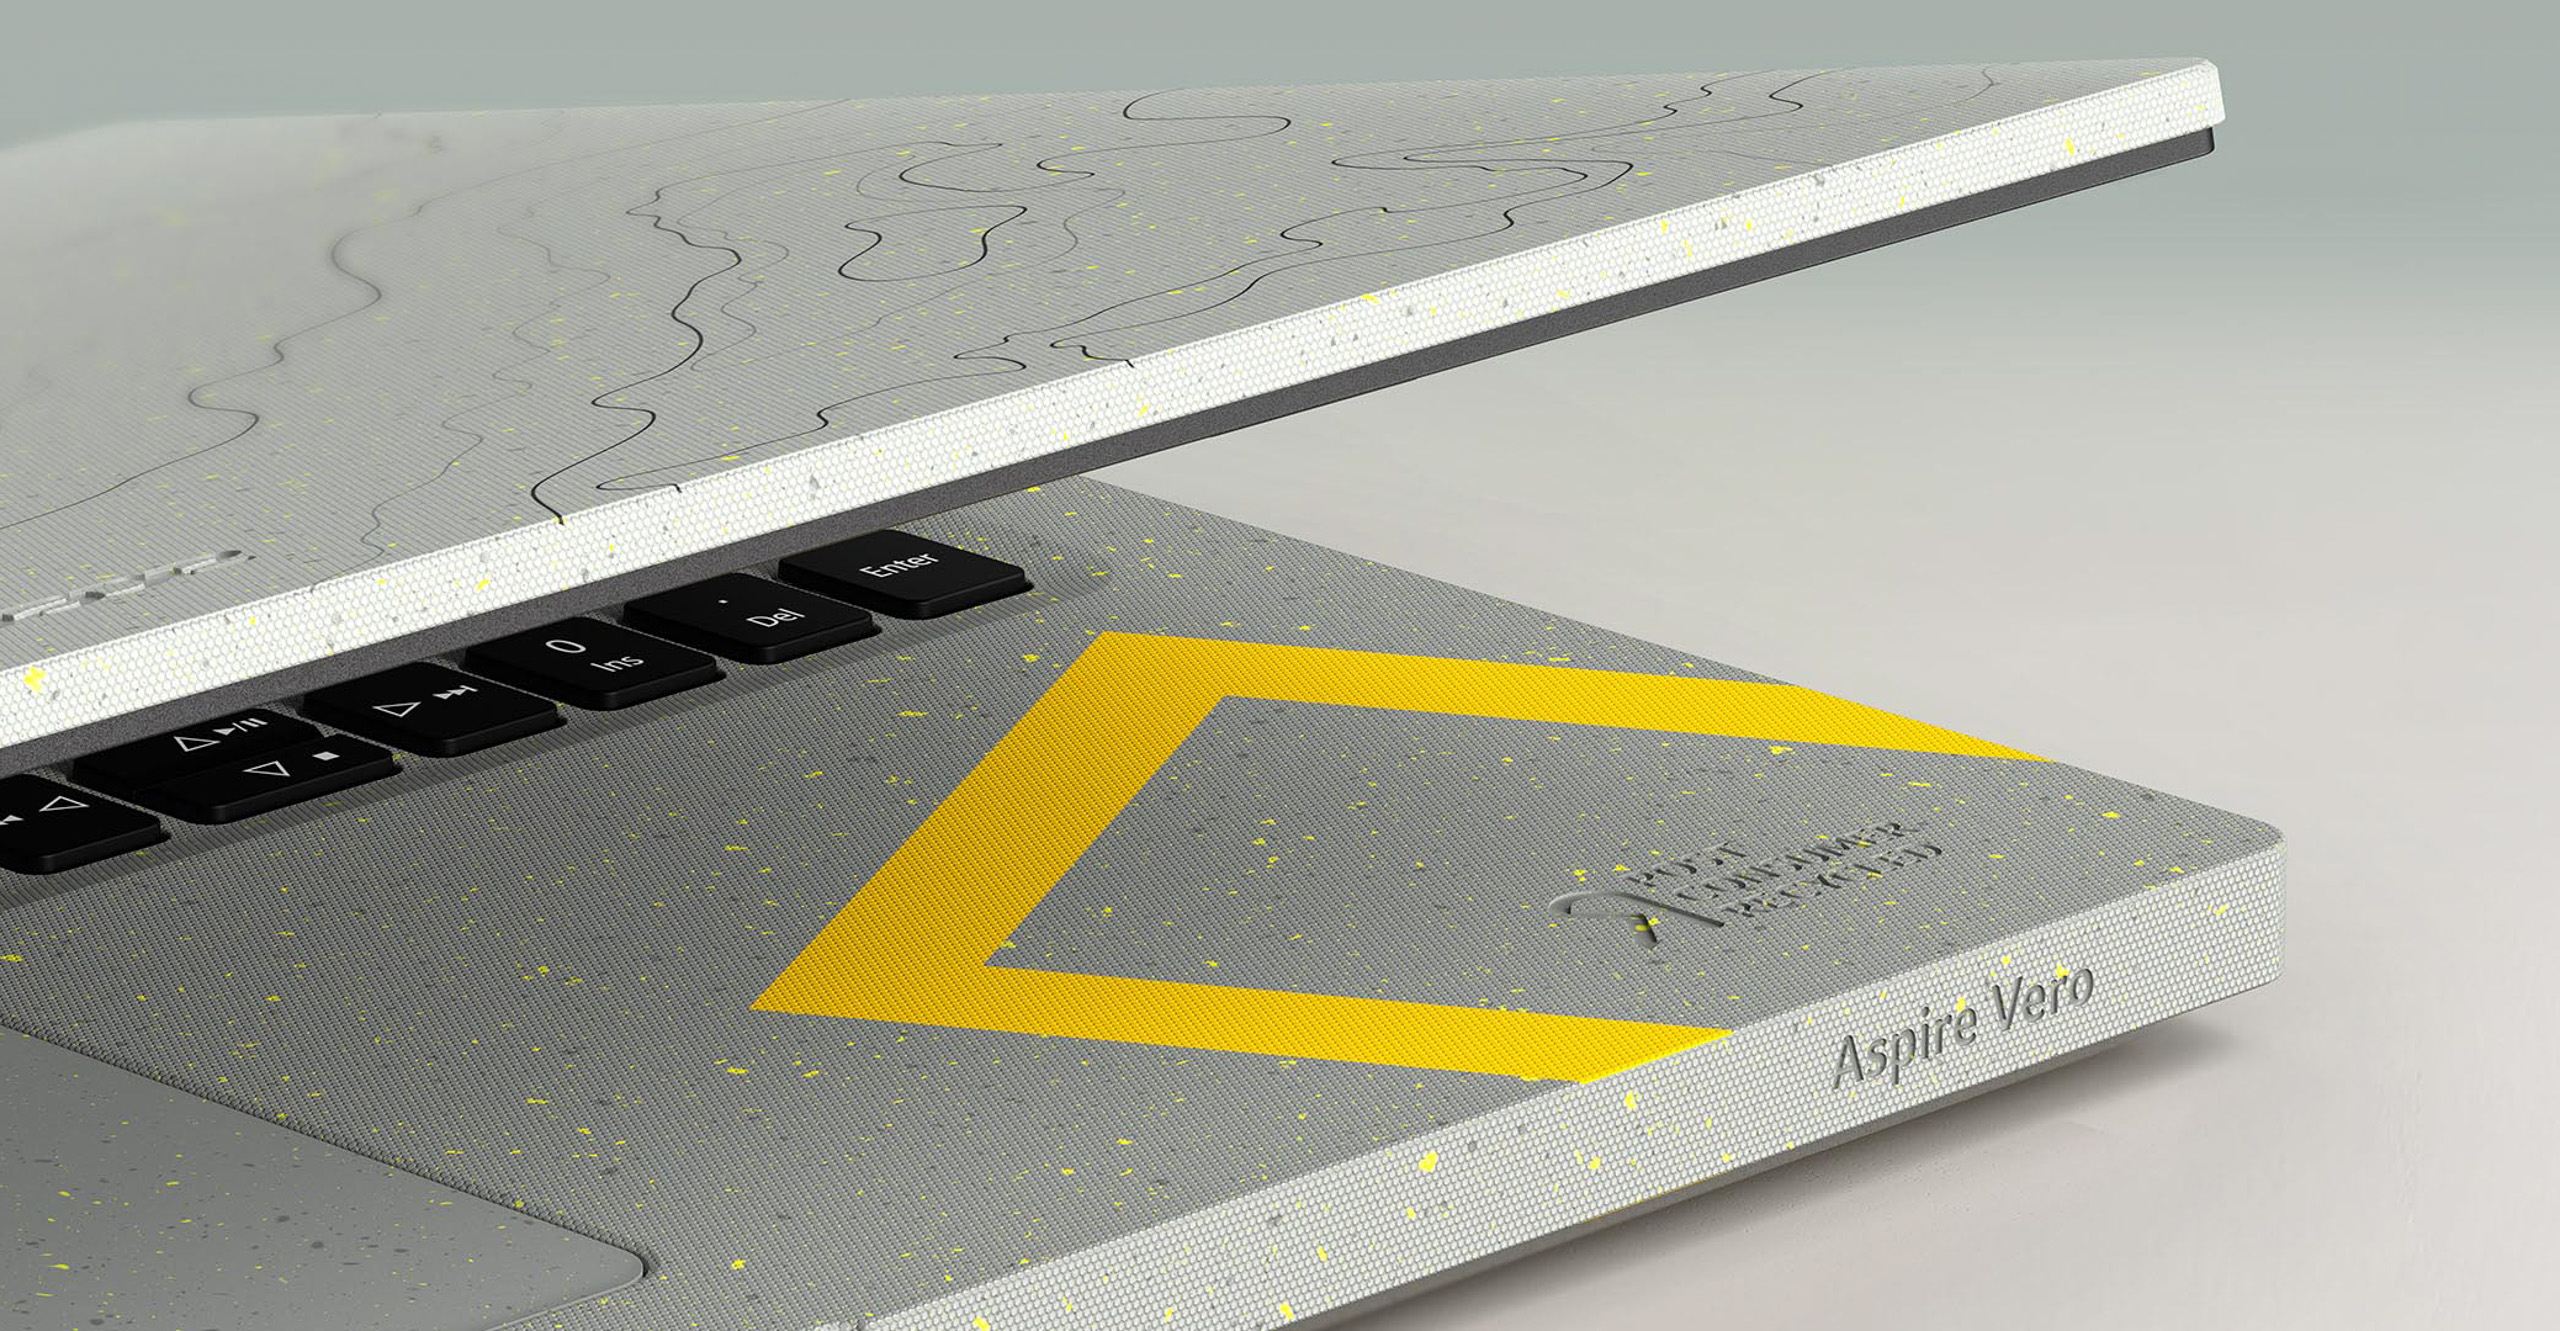 Acer giới thiệu Aspire Vero National Geographic Edition: Mẫu laptop vì một tương lai tốt đẹp